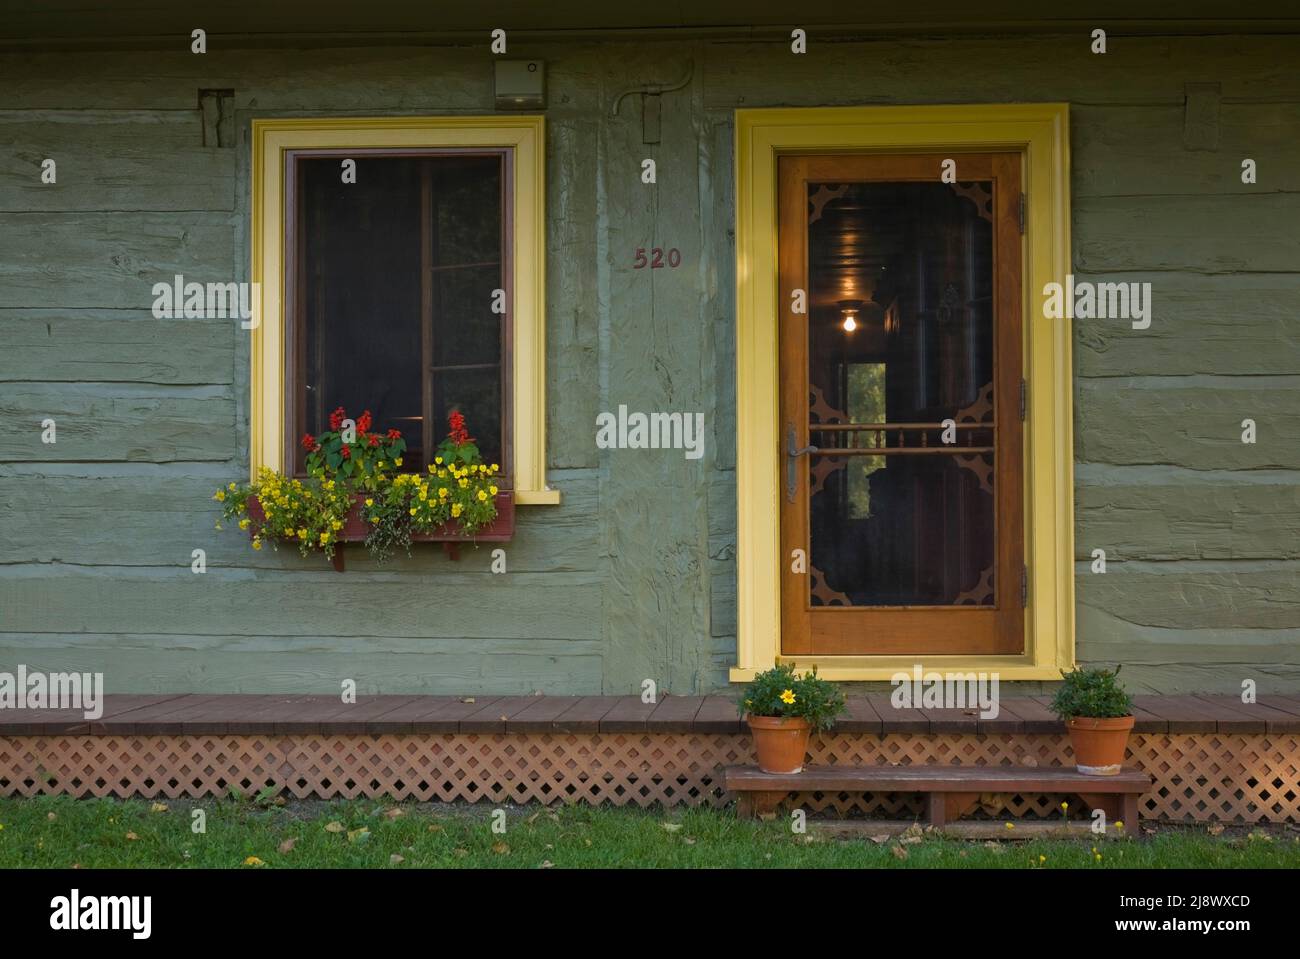 Arquitectura verde oliva fotografías e imágenes de alta resolución - Alamy